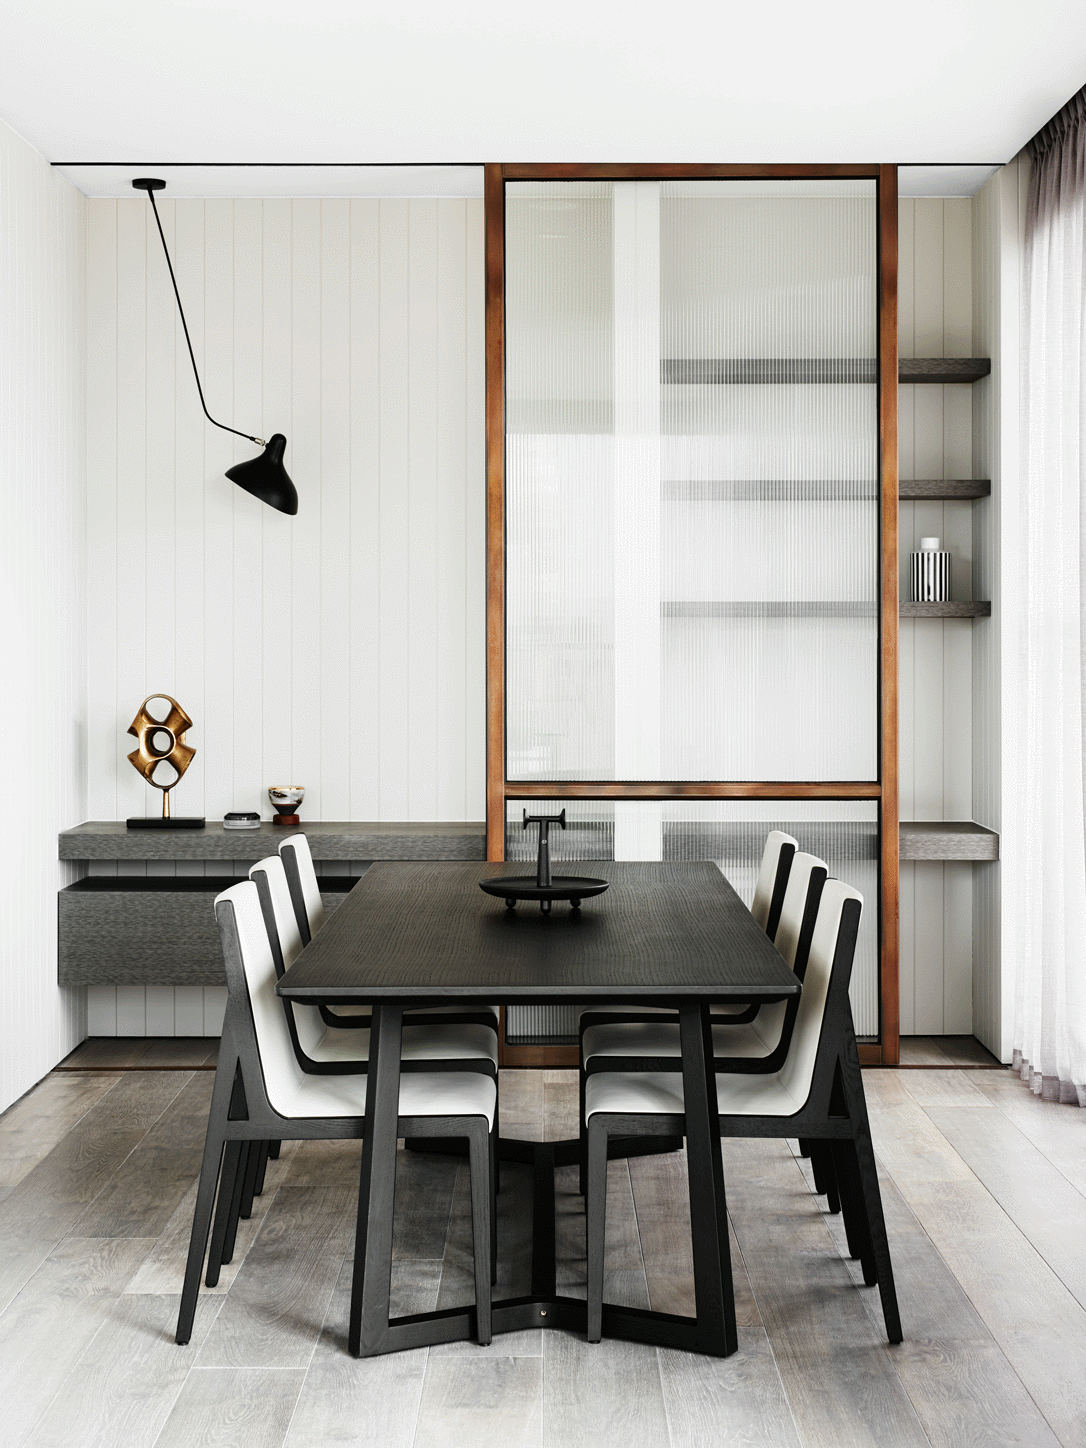 玻璃隔断的设计让整个空间瞬间温柔了起来，也增加了餐厅空间的功能。